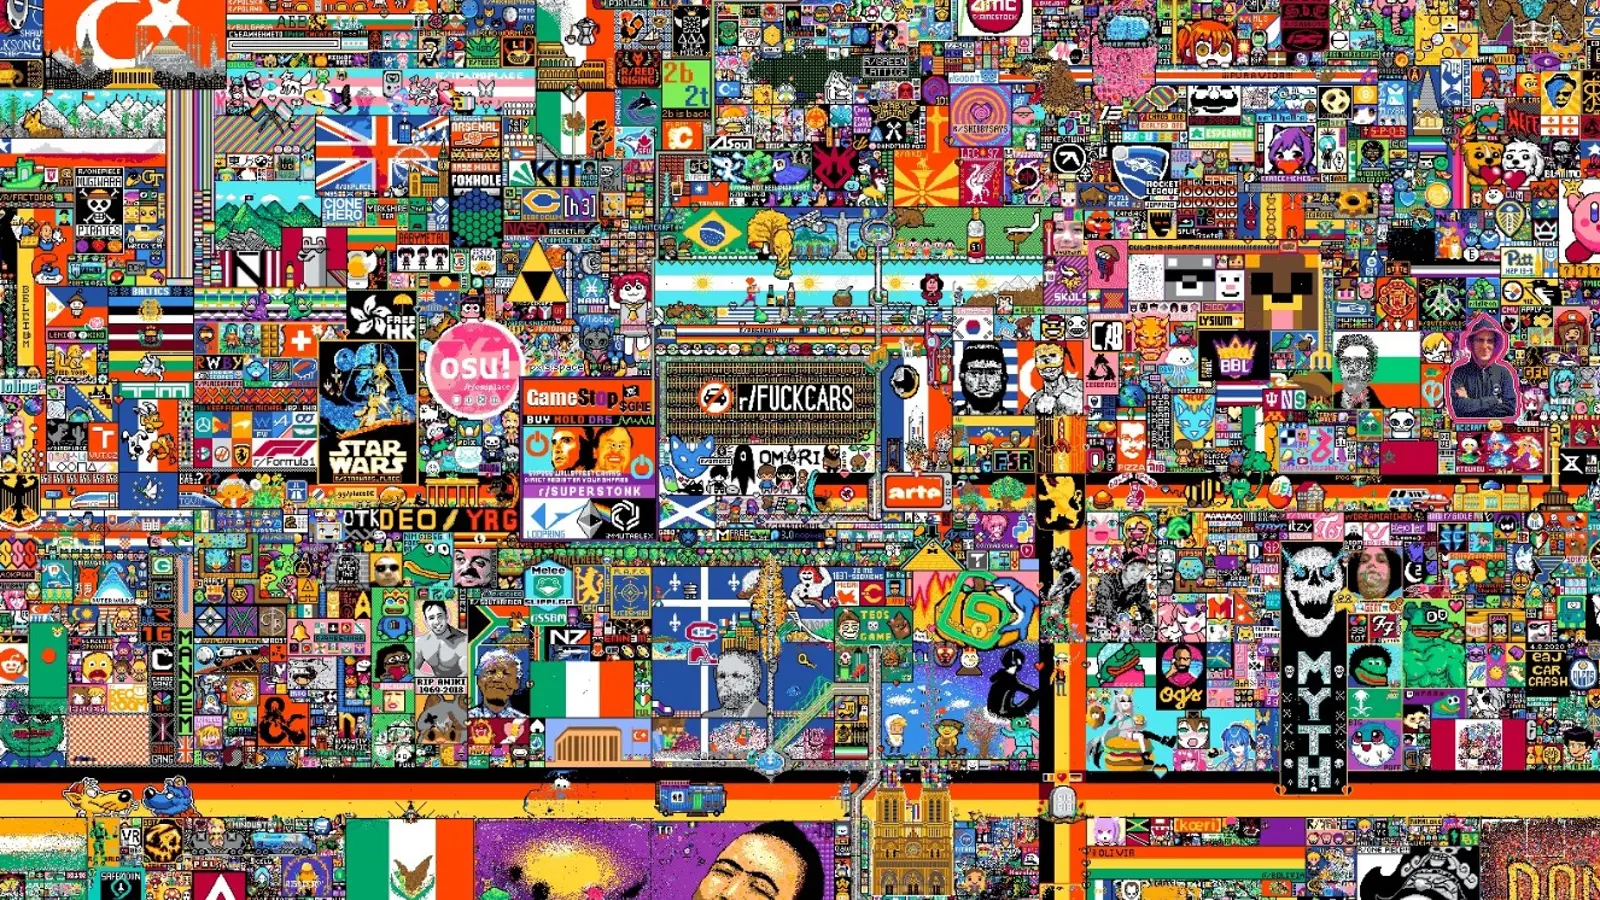 Mural virtual en Reddit desata pelea entre naciones